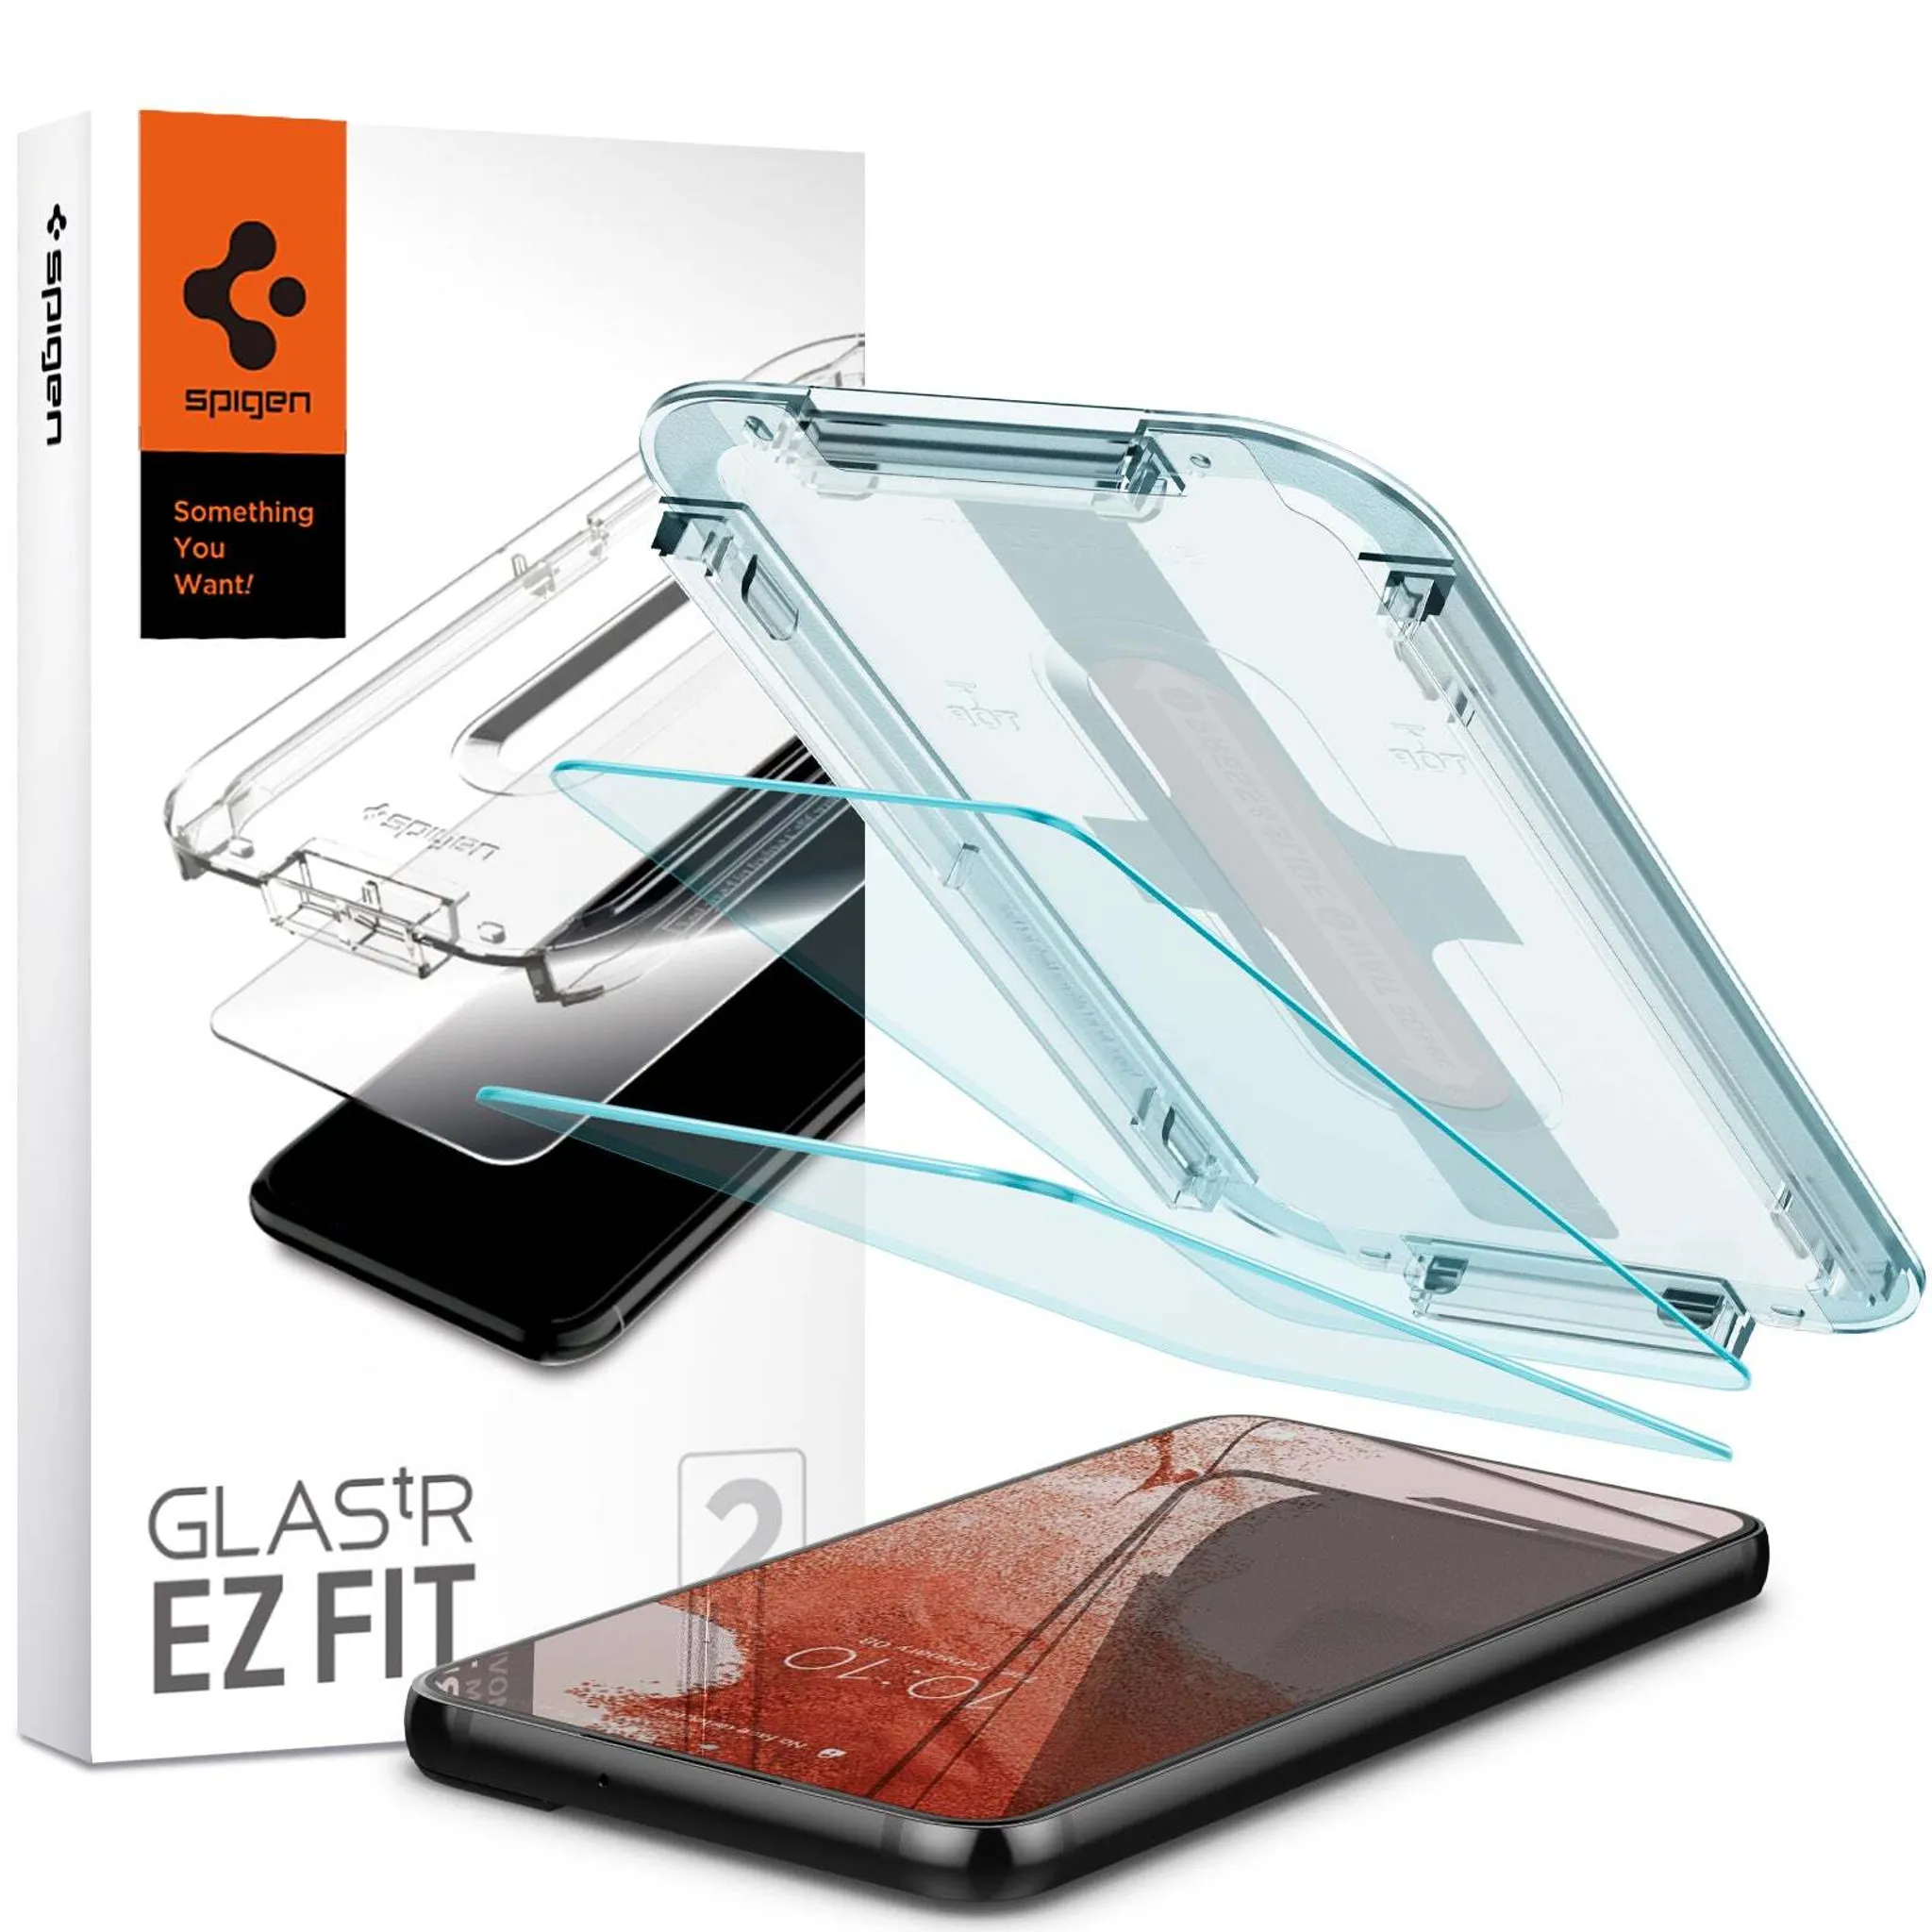 Spigen GLAStR Kameraprotektor aus Glas 2er-Pack für das Samsung